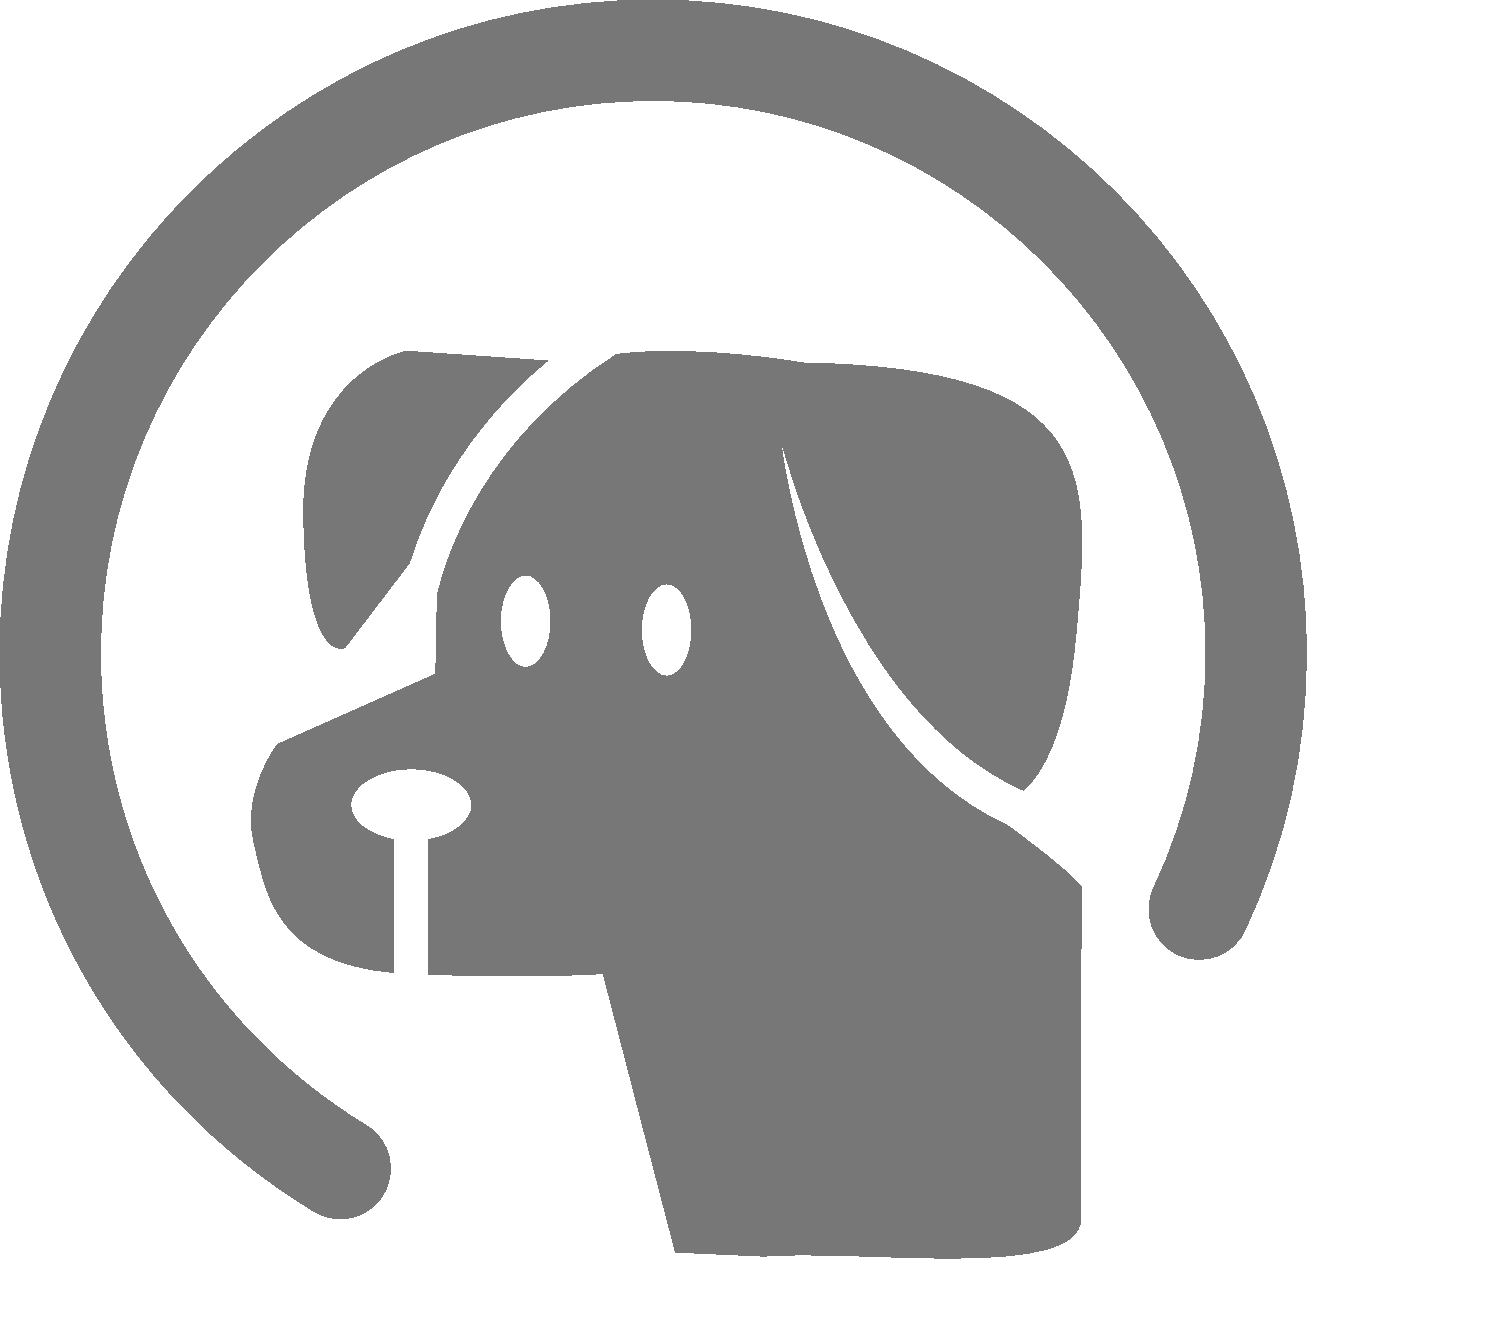 White Dog Logo - The Dog Gateway - Contact